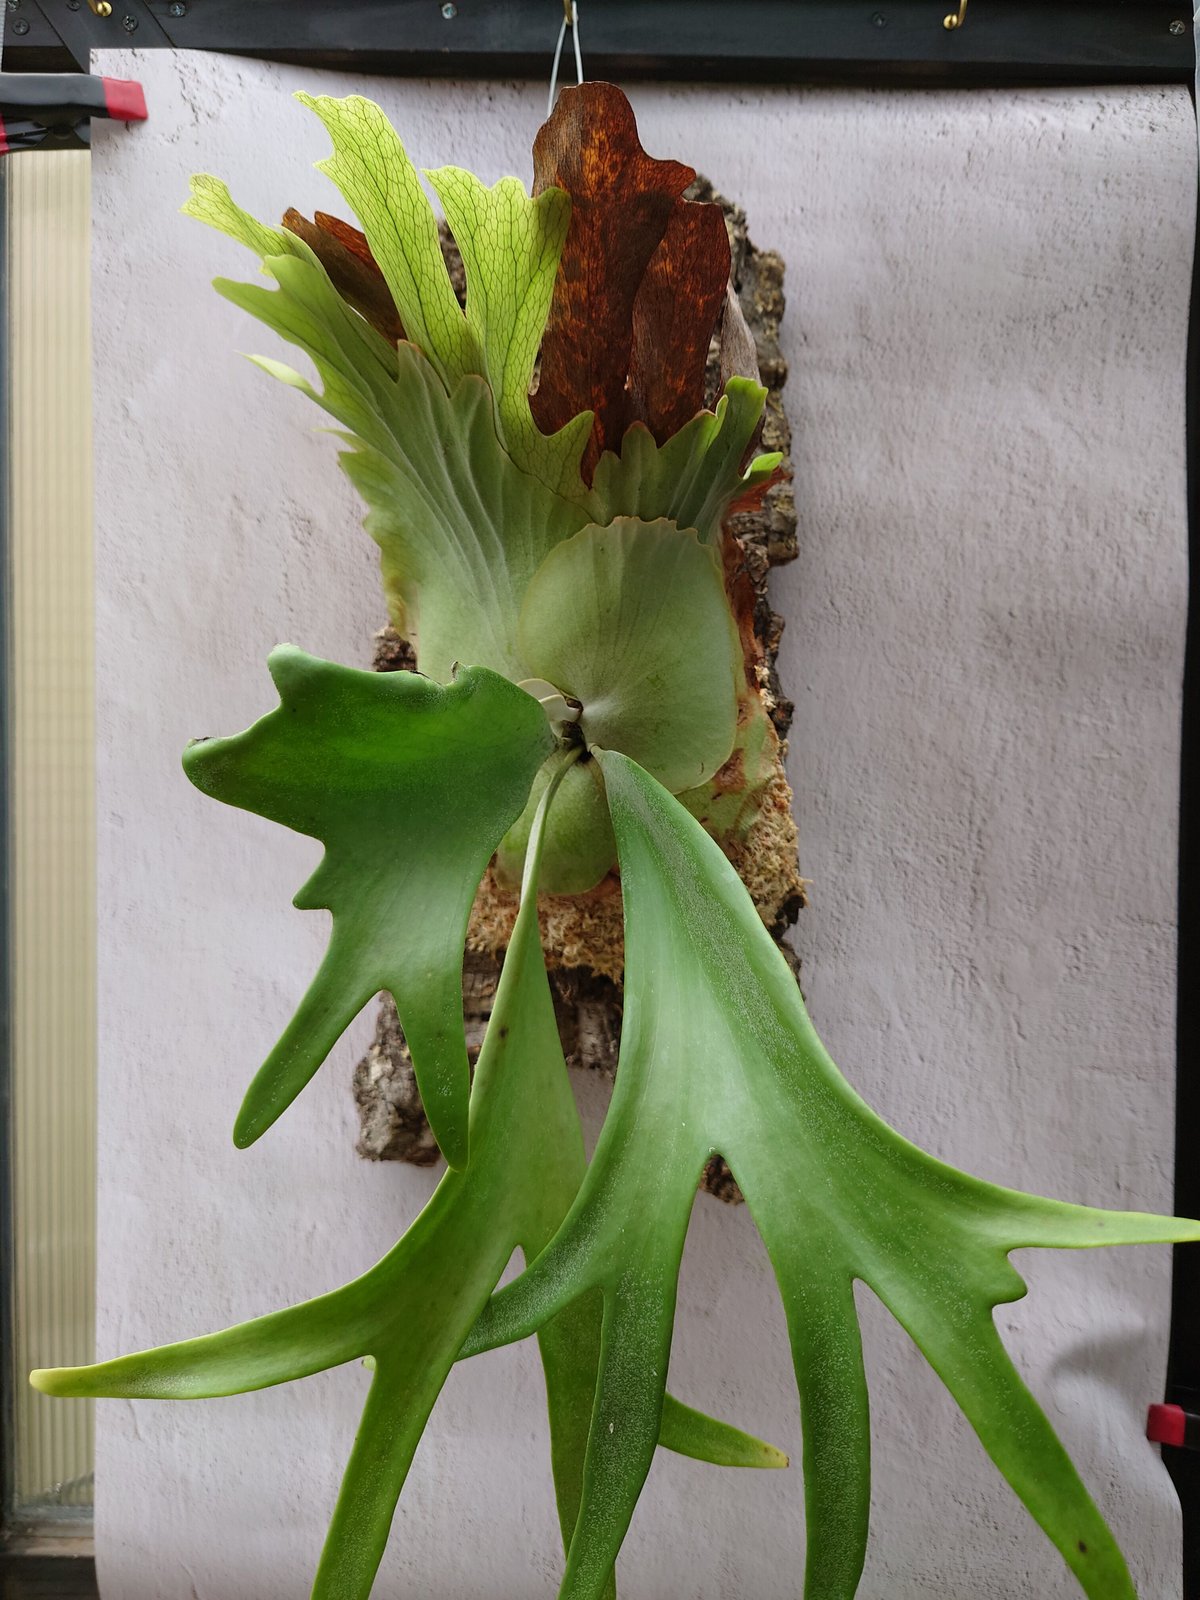 ビカクシダ ウィリンキーcv.インドネシア Platycerium willinckii cv.Indonesia コウモリラン  ビカクシダウィリンキー 植物 シダ植物 ビカクシダコルク付け